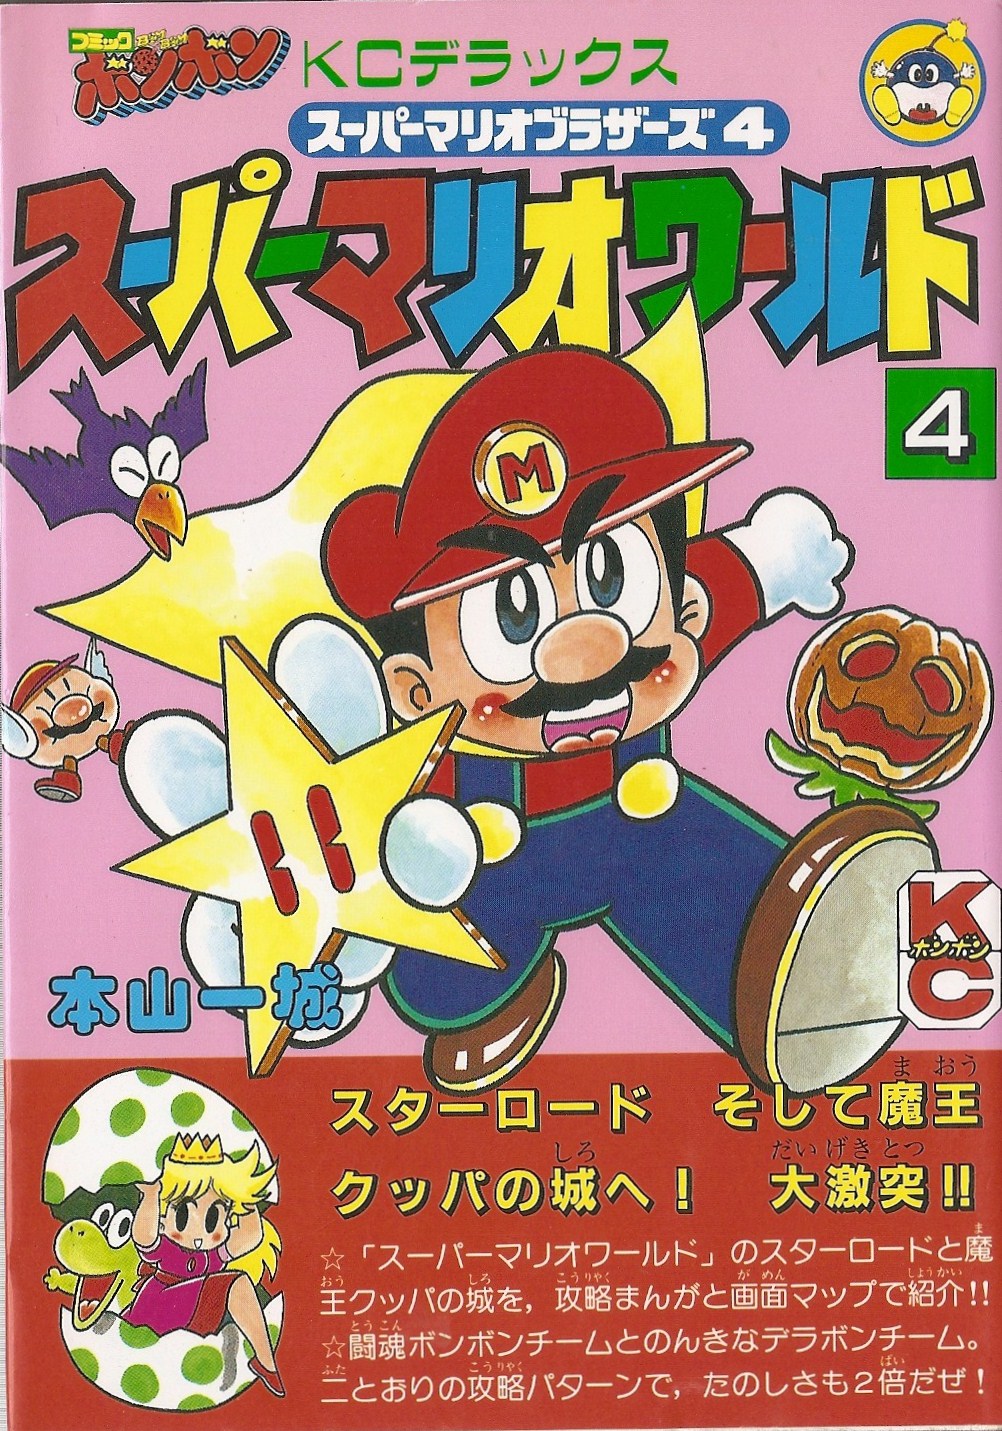 Filekc Mario Super Mario World Volume 4 Cover Super Mario Wiki The Mario Encyclopedia 5300